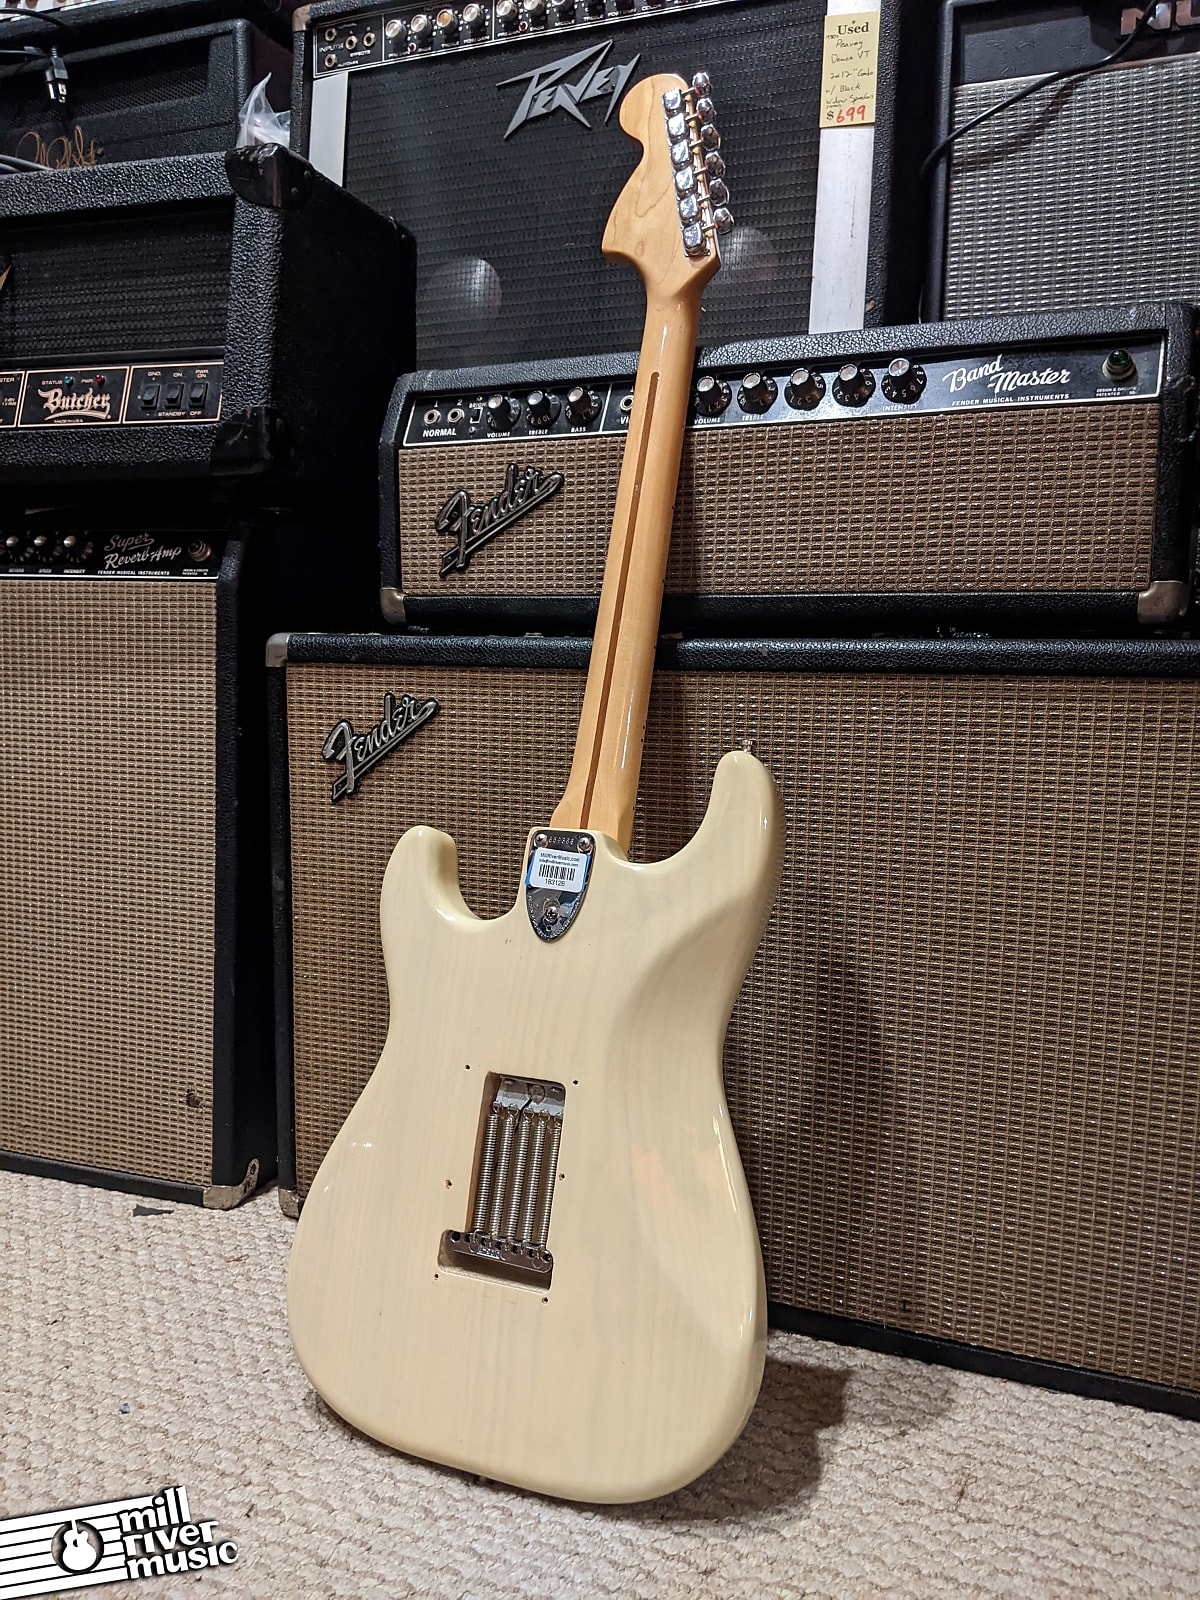 Fender Stratocaster Custom Mary Kay Blonde Maple Neck 1975 w/ G&G Case